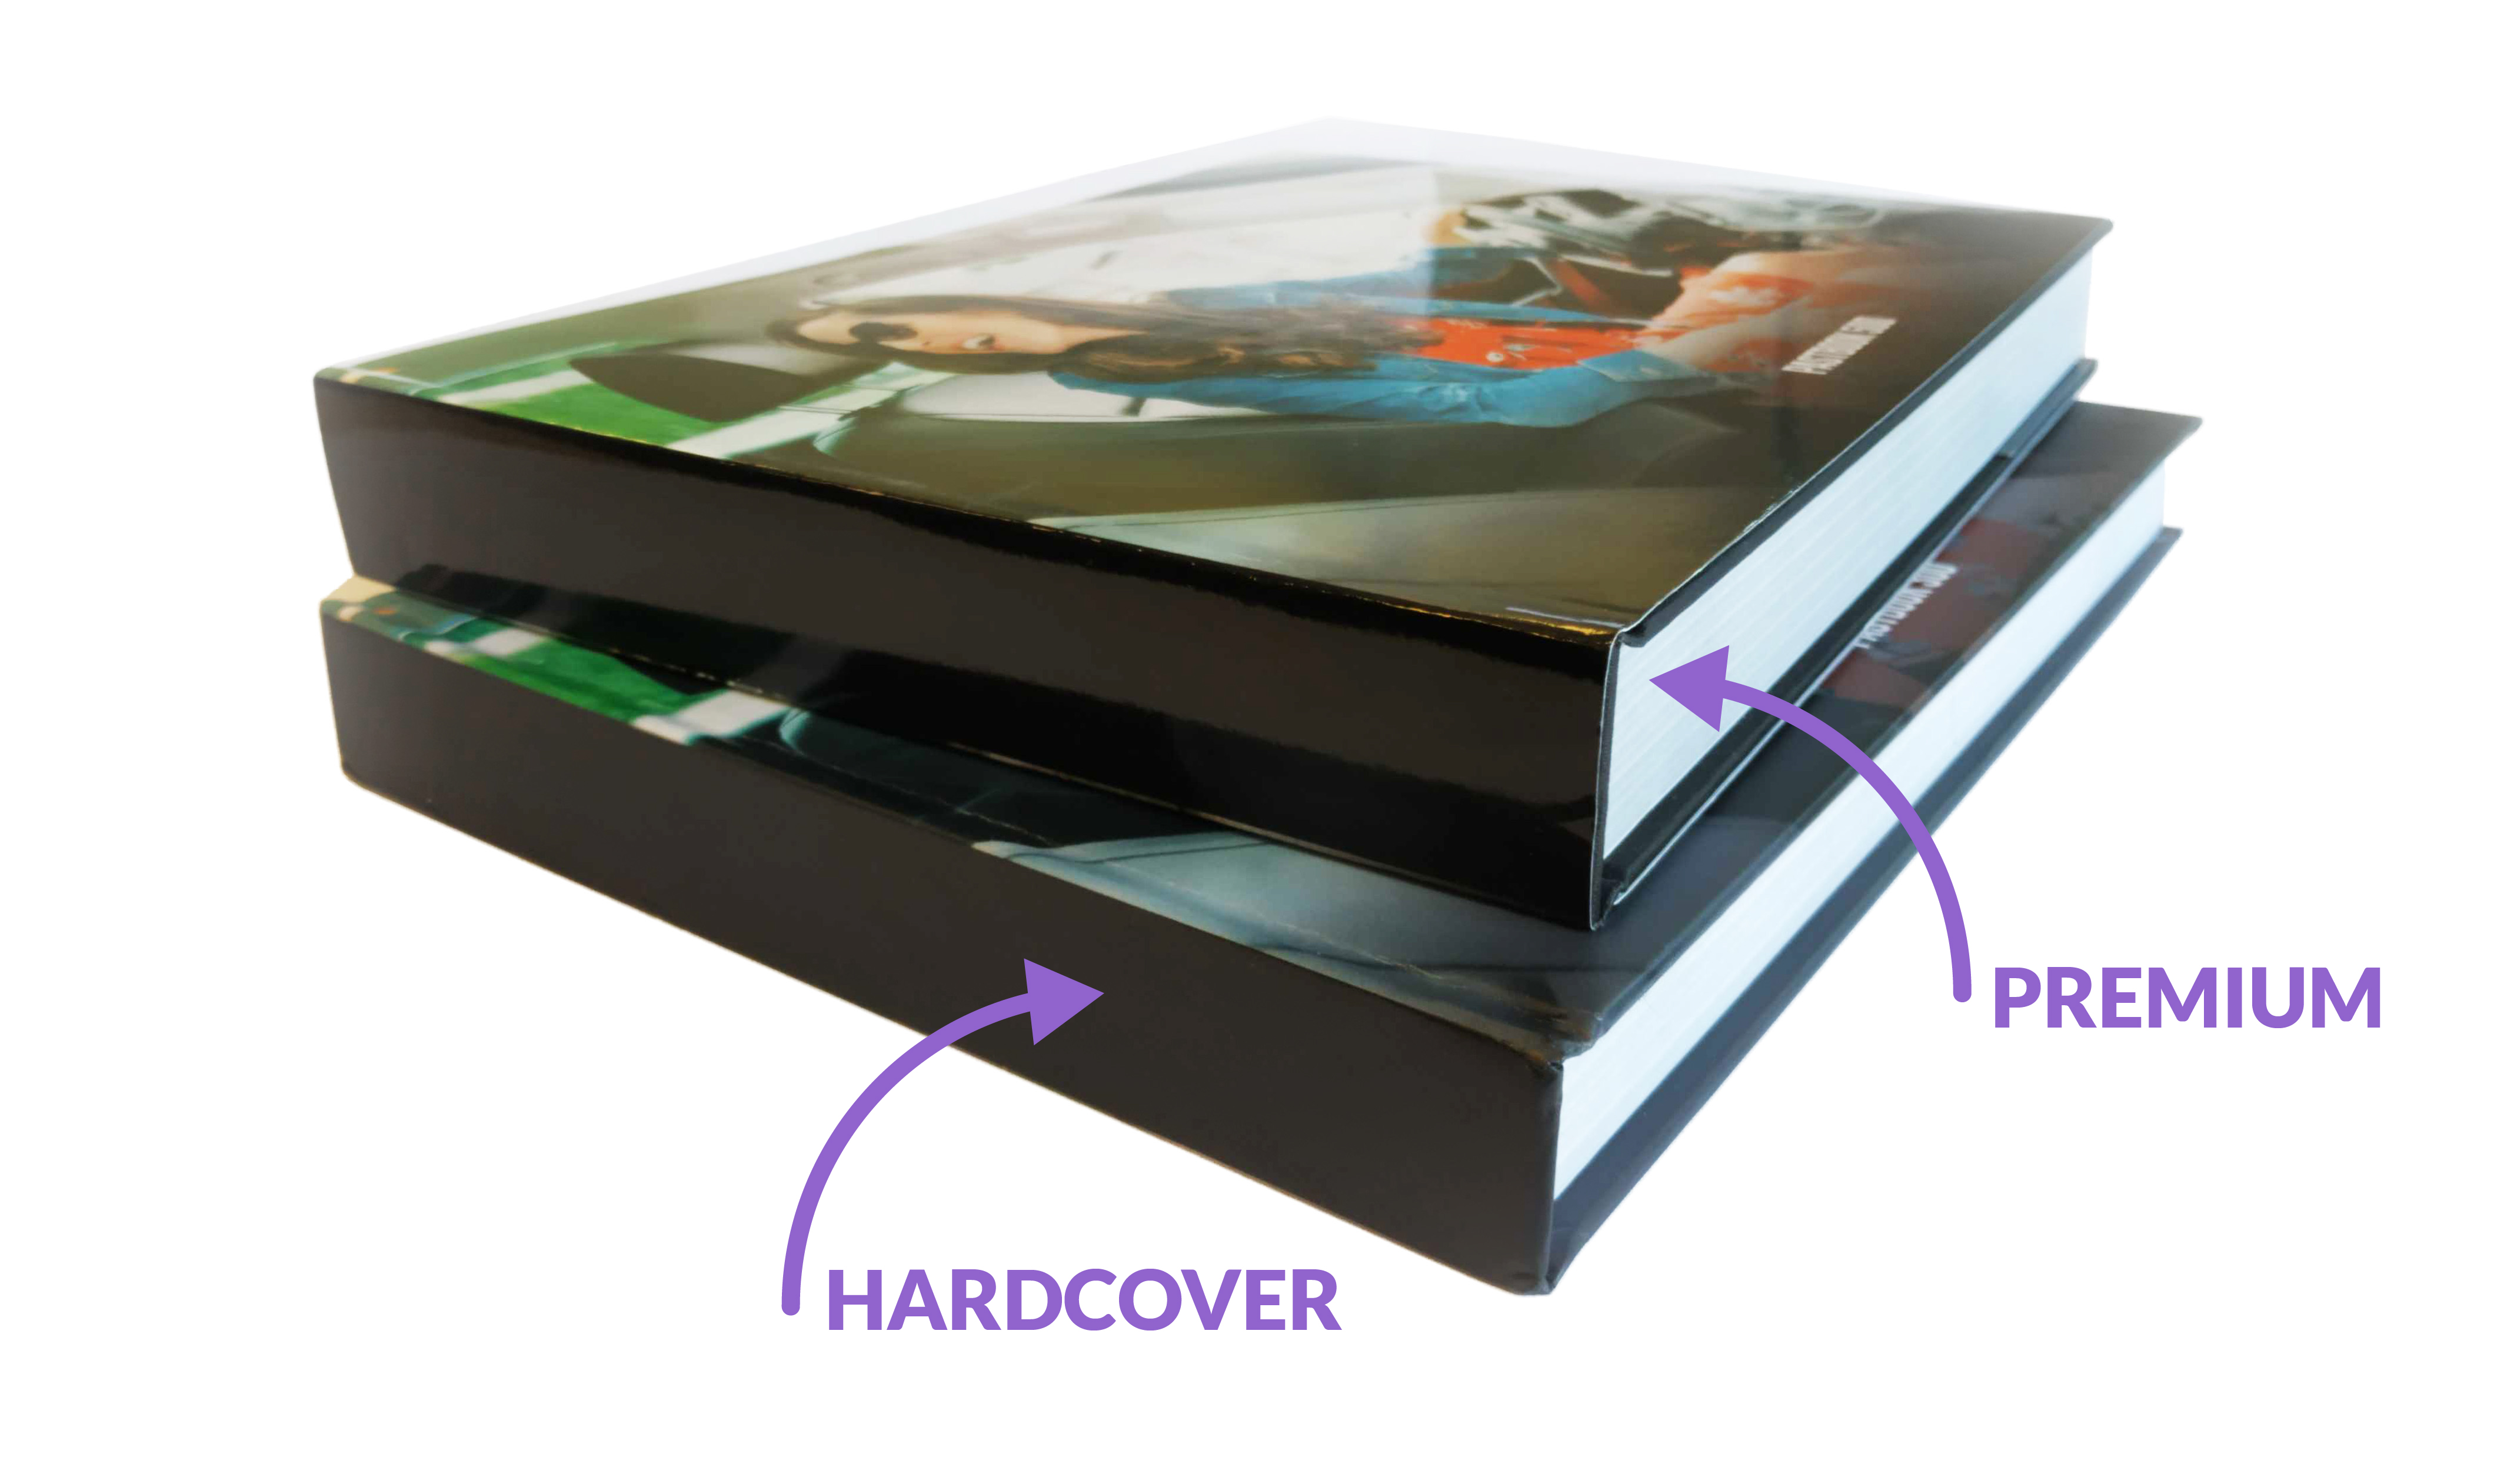 Hardcover_vs_Premium.jpg